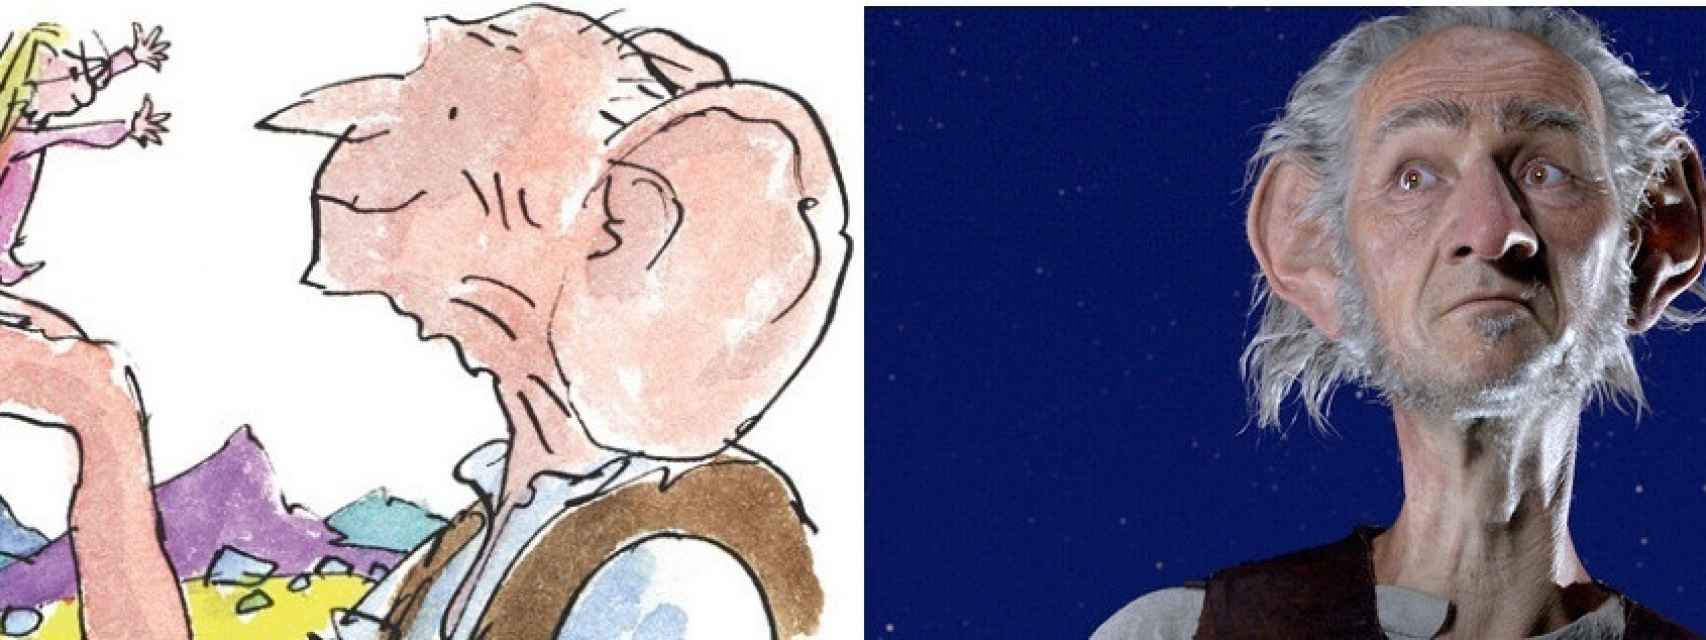 A la derecha, la ilustración de Quentin Blake; a la izquierda la versión de Spielberg.